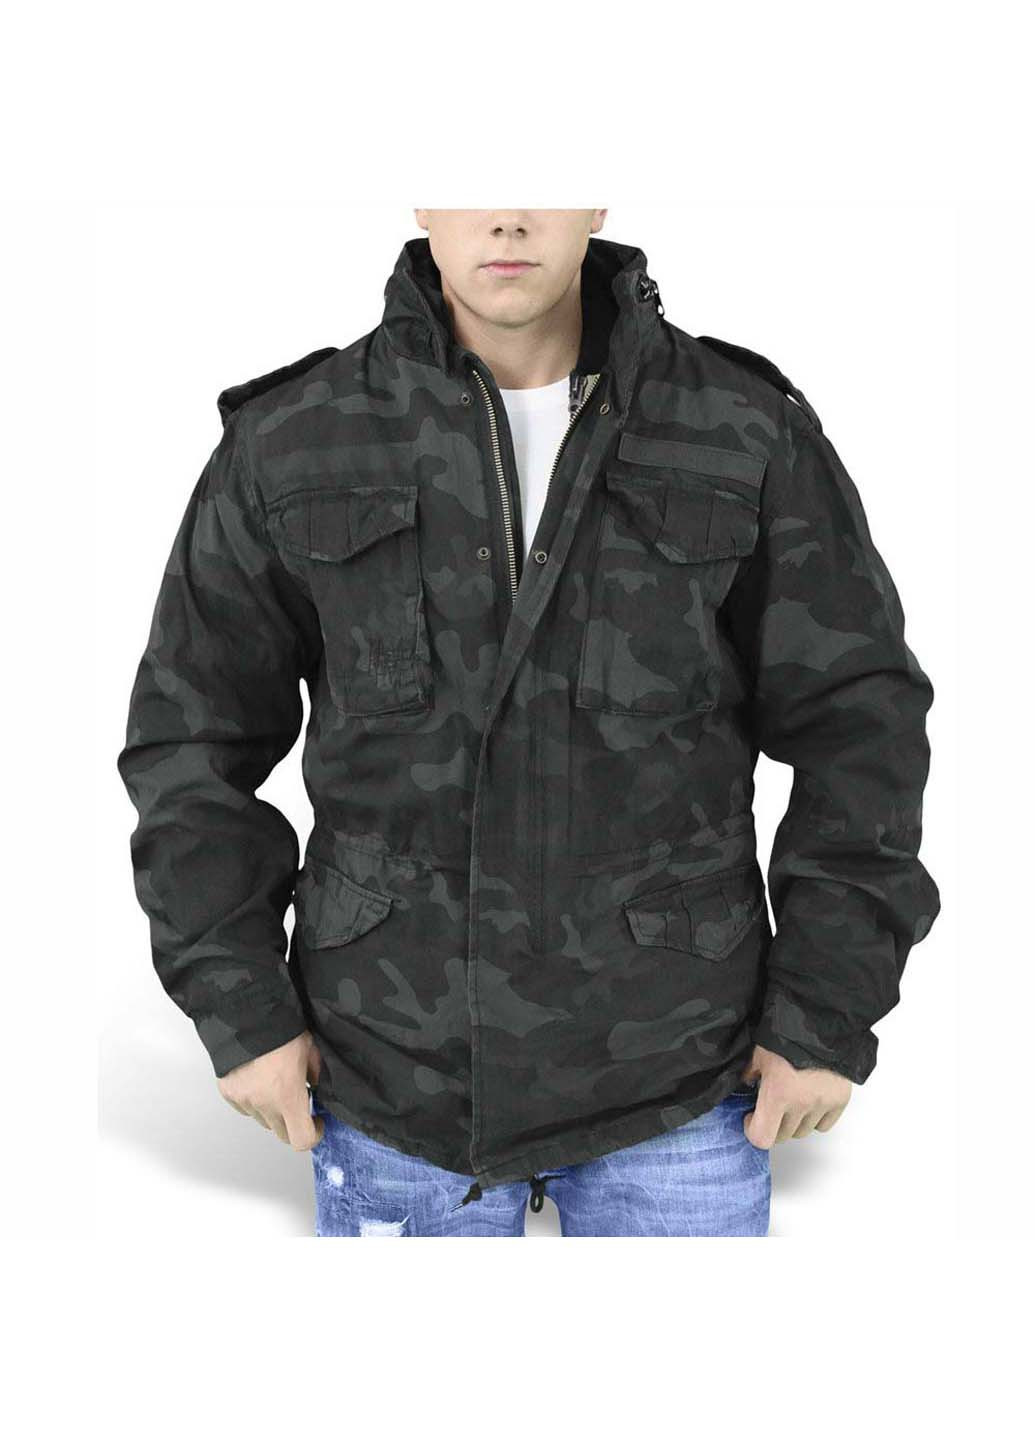 Черная зимняя куртка regiment m 65 jacket black camo Surplus